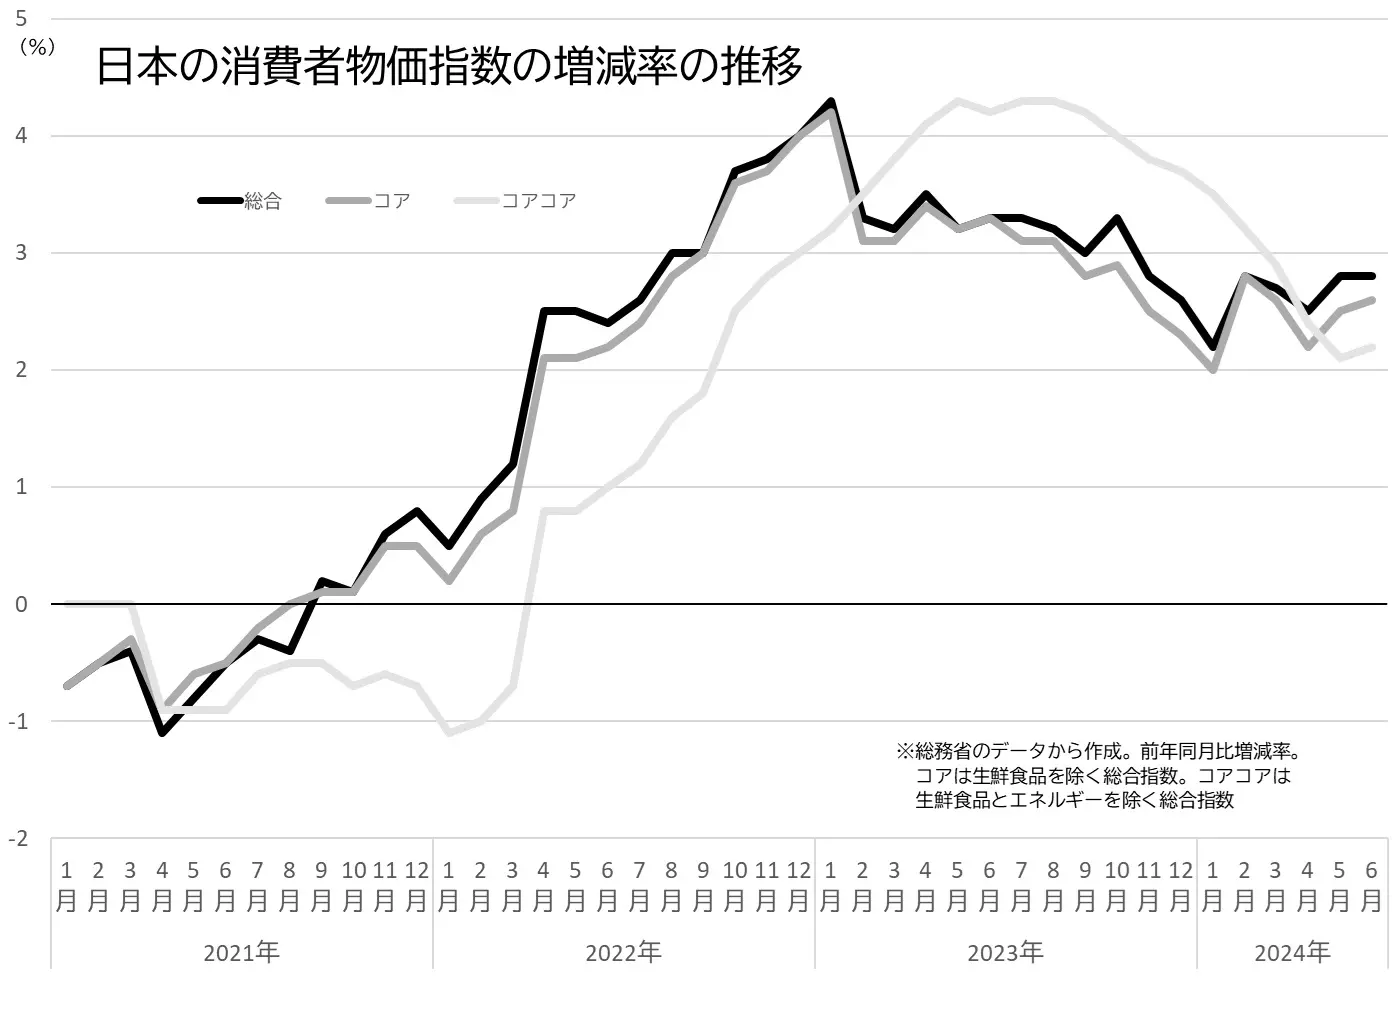 日本の消費者物価指数（総合、コア、コアコア）の伸び率の推移のグラフ